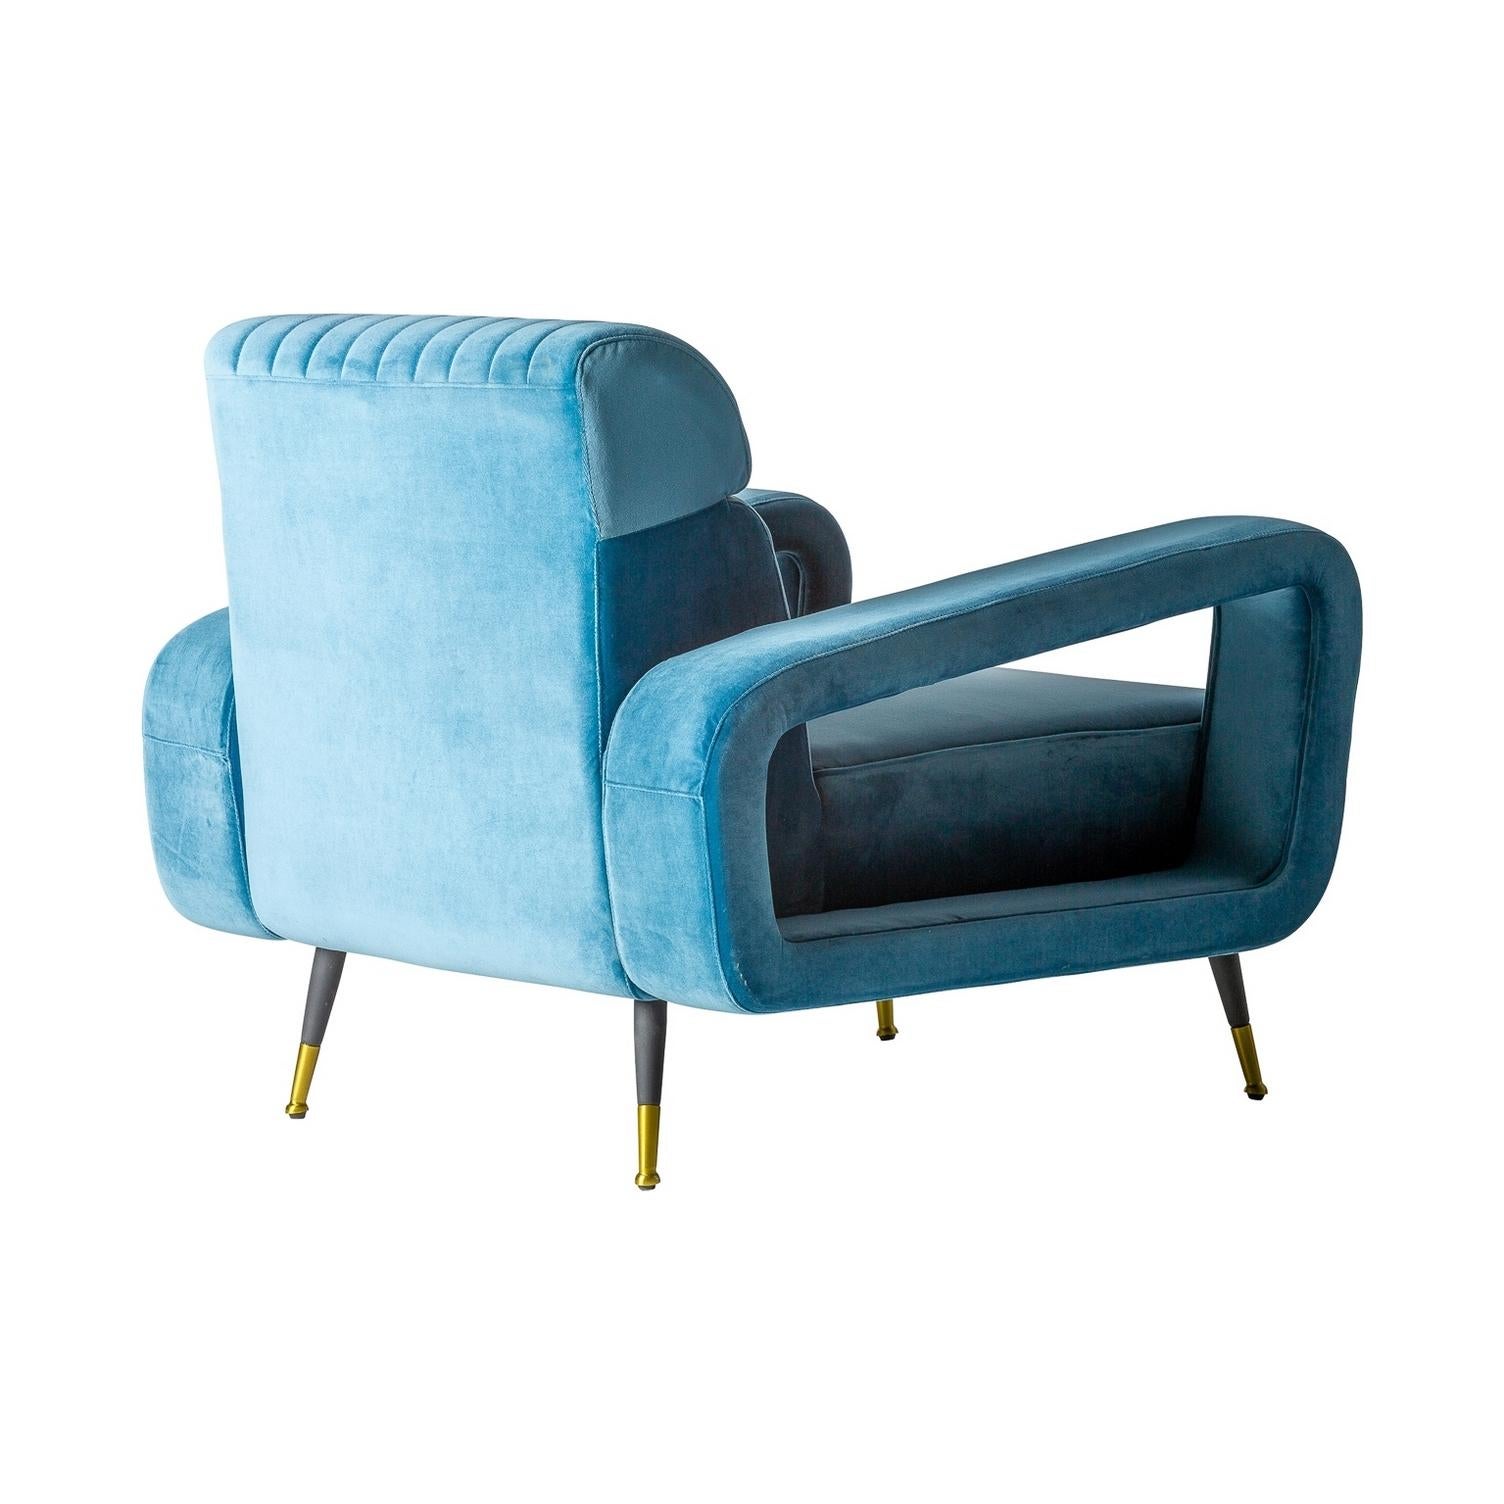 1950er Design und Vintage-Stil blauer Samt und schwarze Metallfüße mit vergoldeten Oberflächen bequemen Sessel.